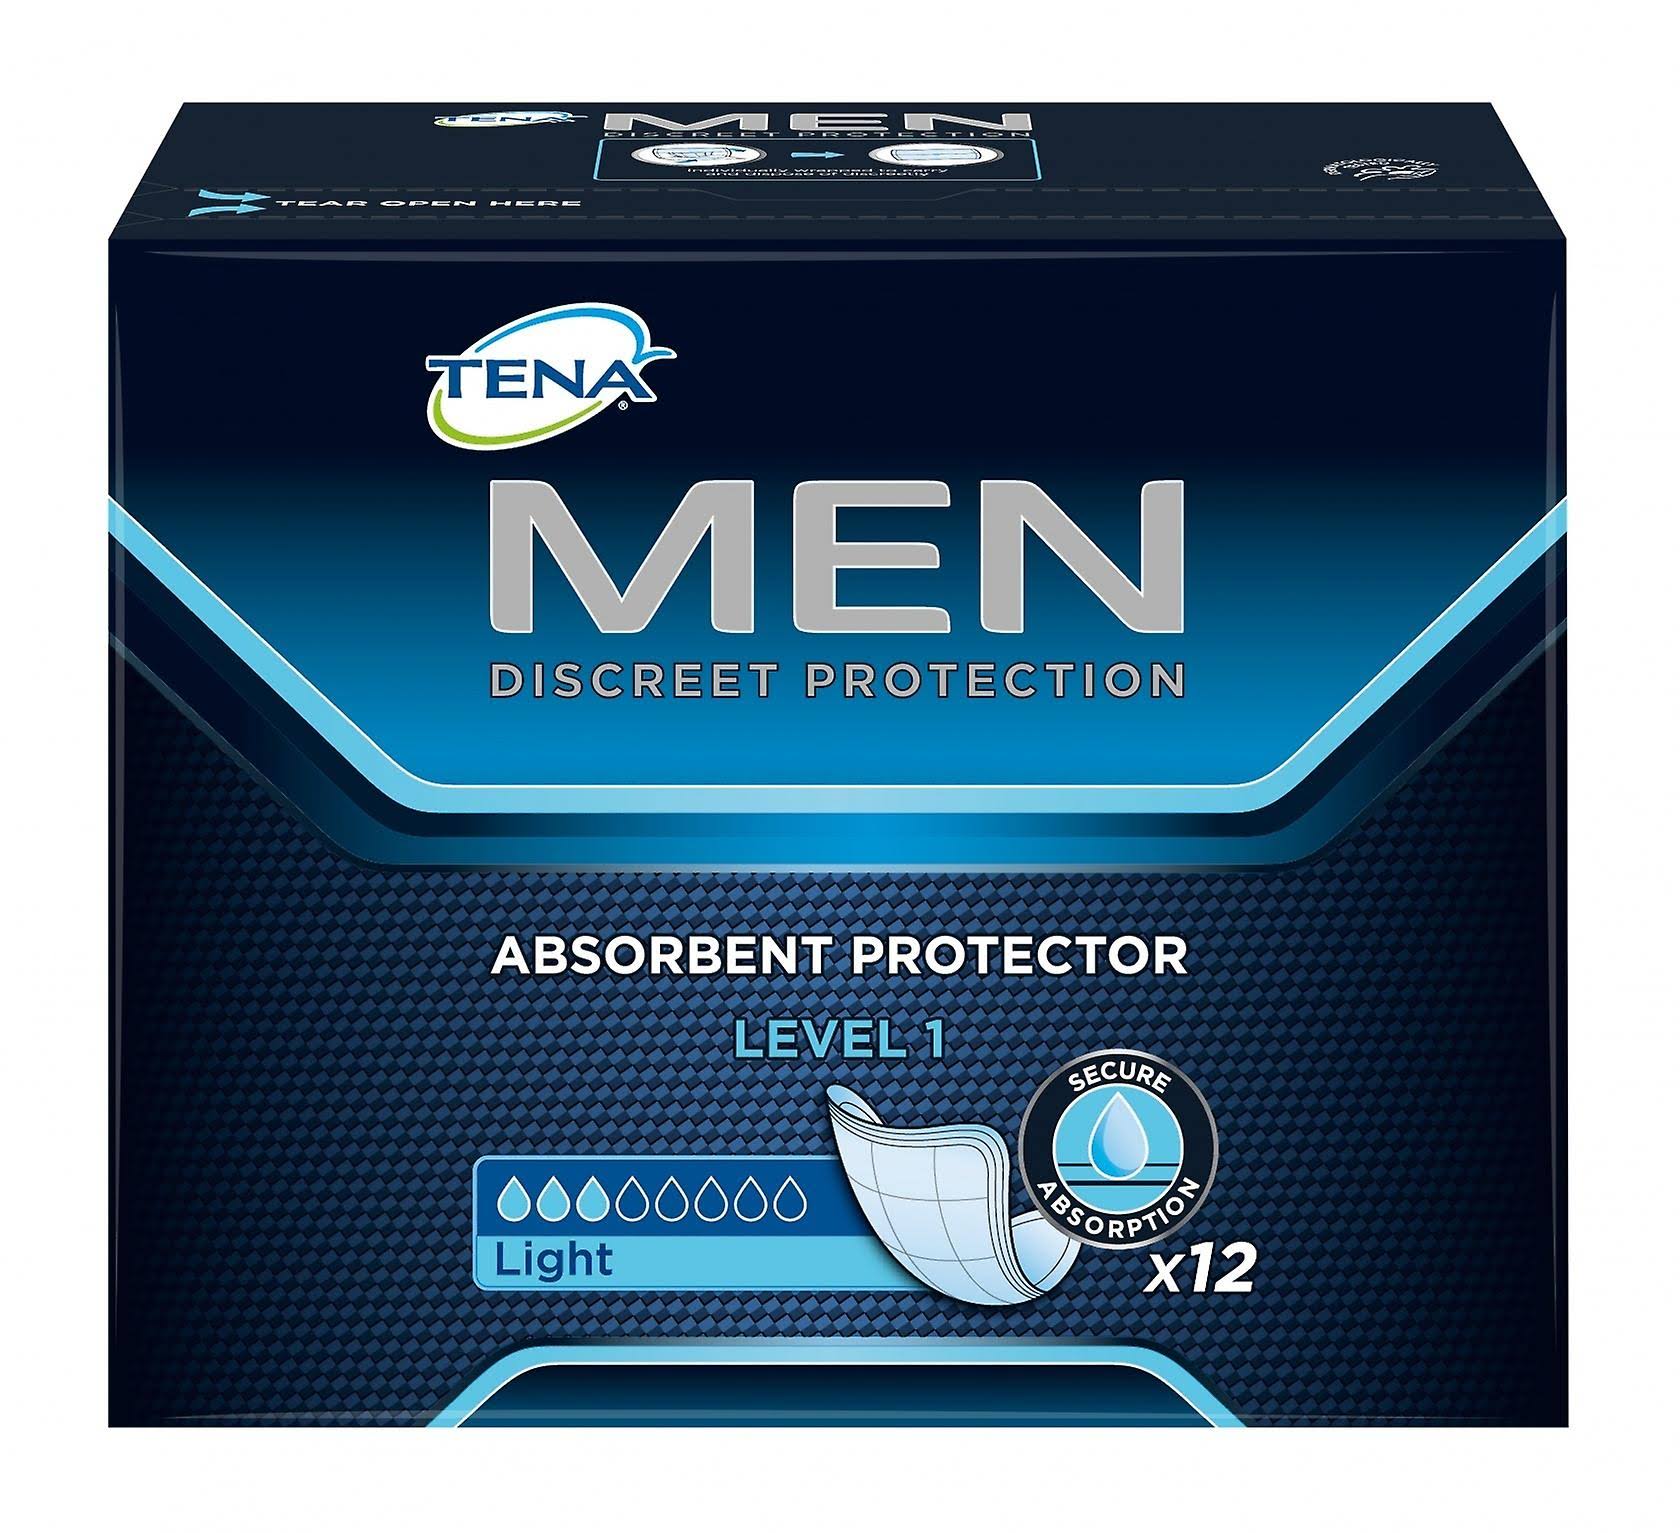 Tena Men Absorbent Protector - Level 2, Medium, x10